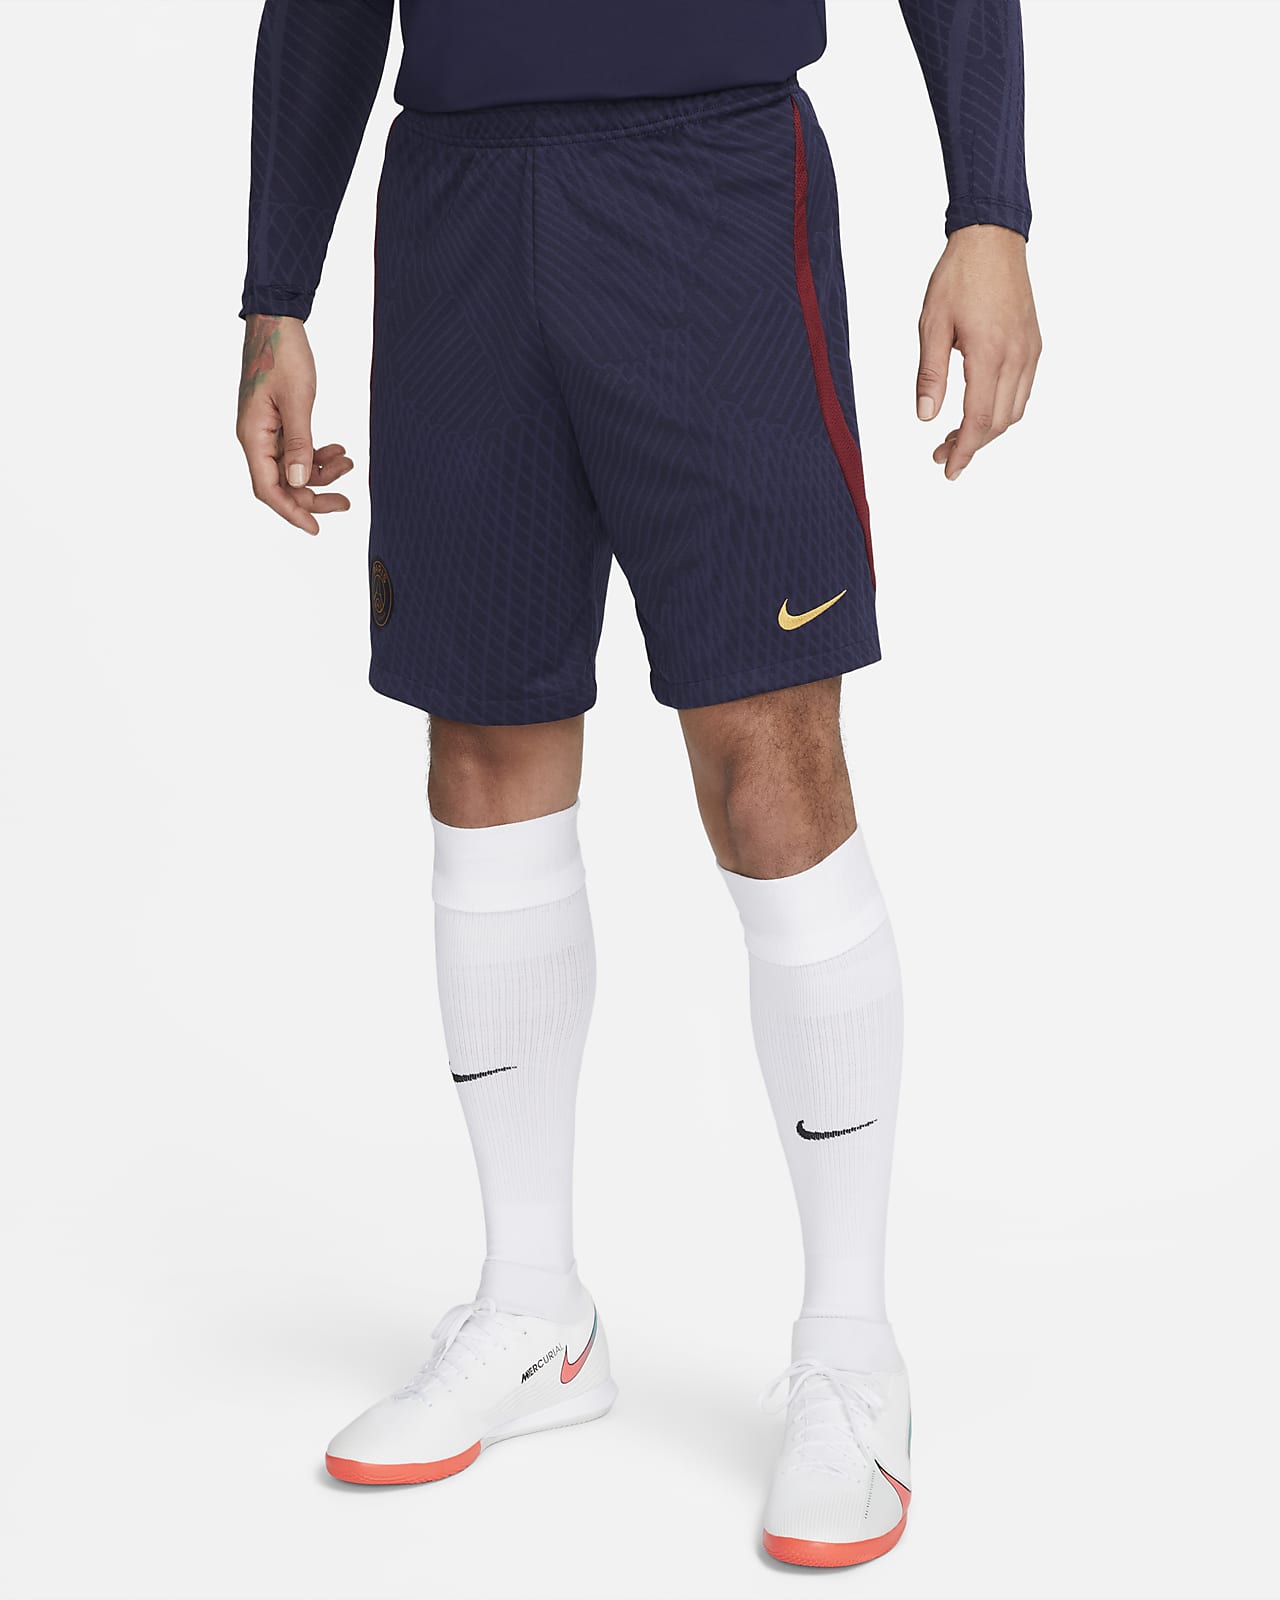 París Saint-Germain Strike Pantalons curts de teixit Knit Nike Dri-FIT de futbol - Home